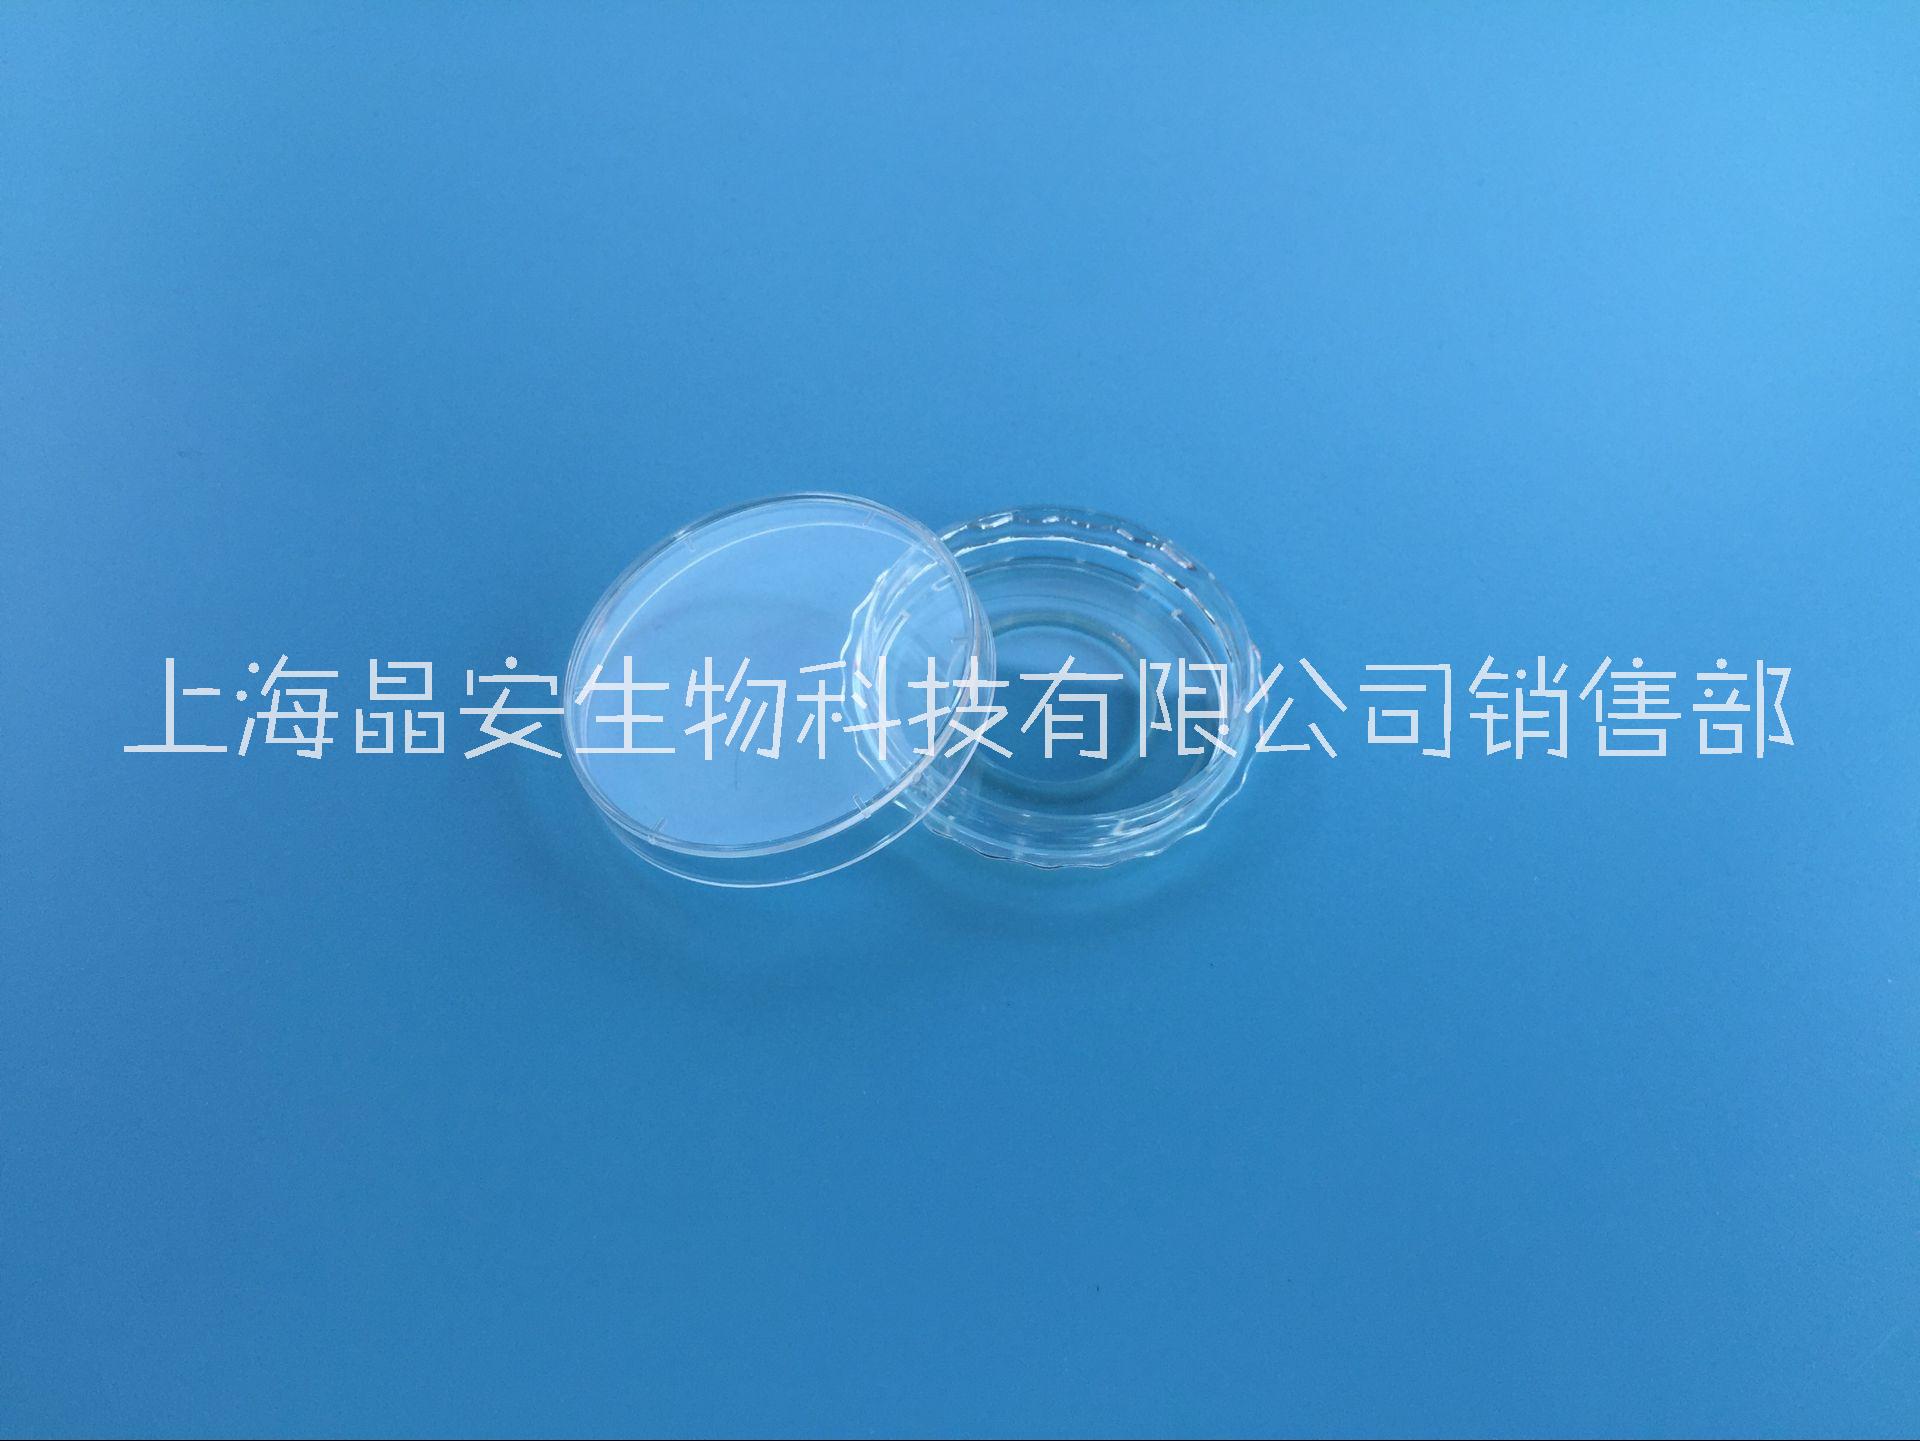 上海晶安35mm激光共聚焦培养皿 共聚焦显微镜用细胞培养皿 塑料玻璃底小皿 活细胞成像用培养皿